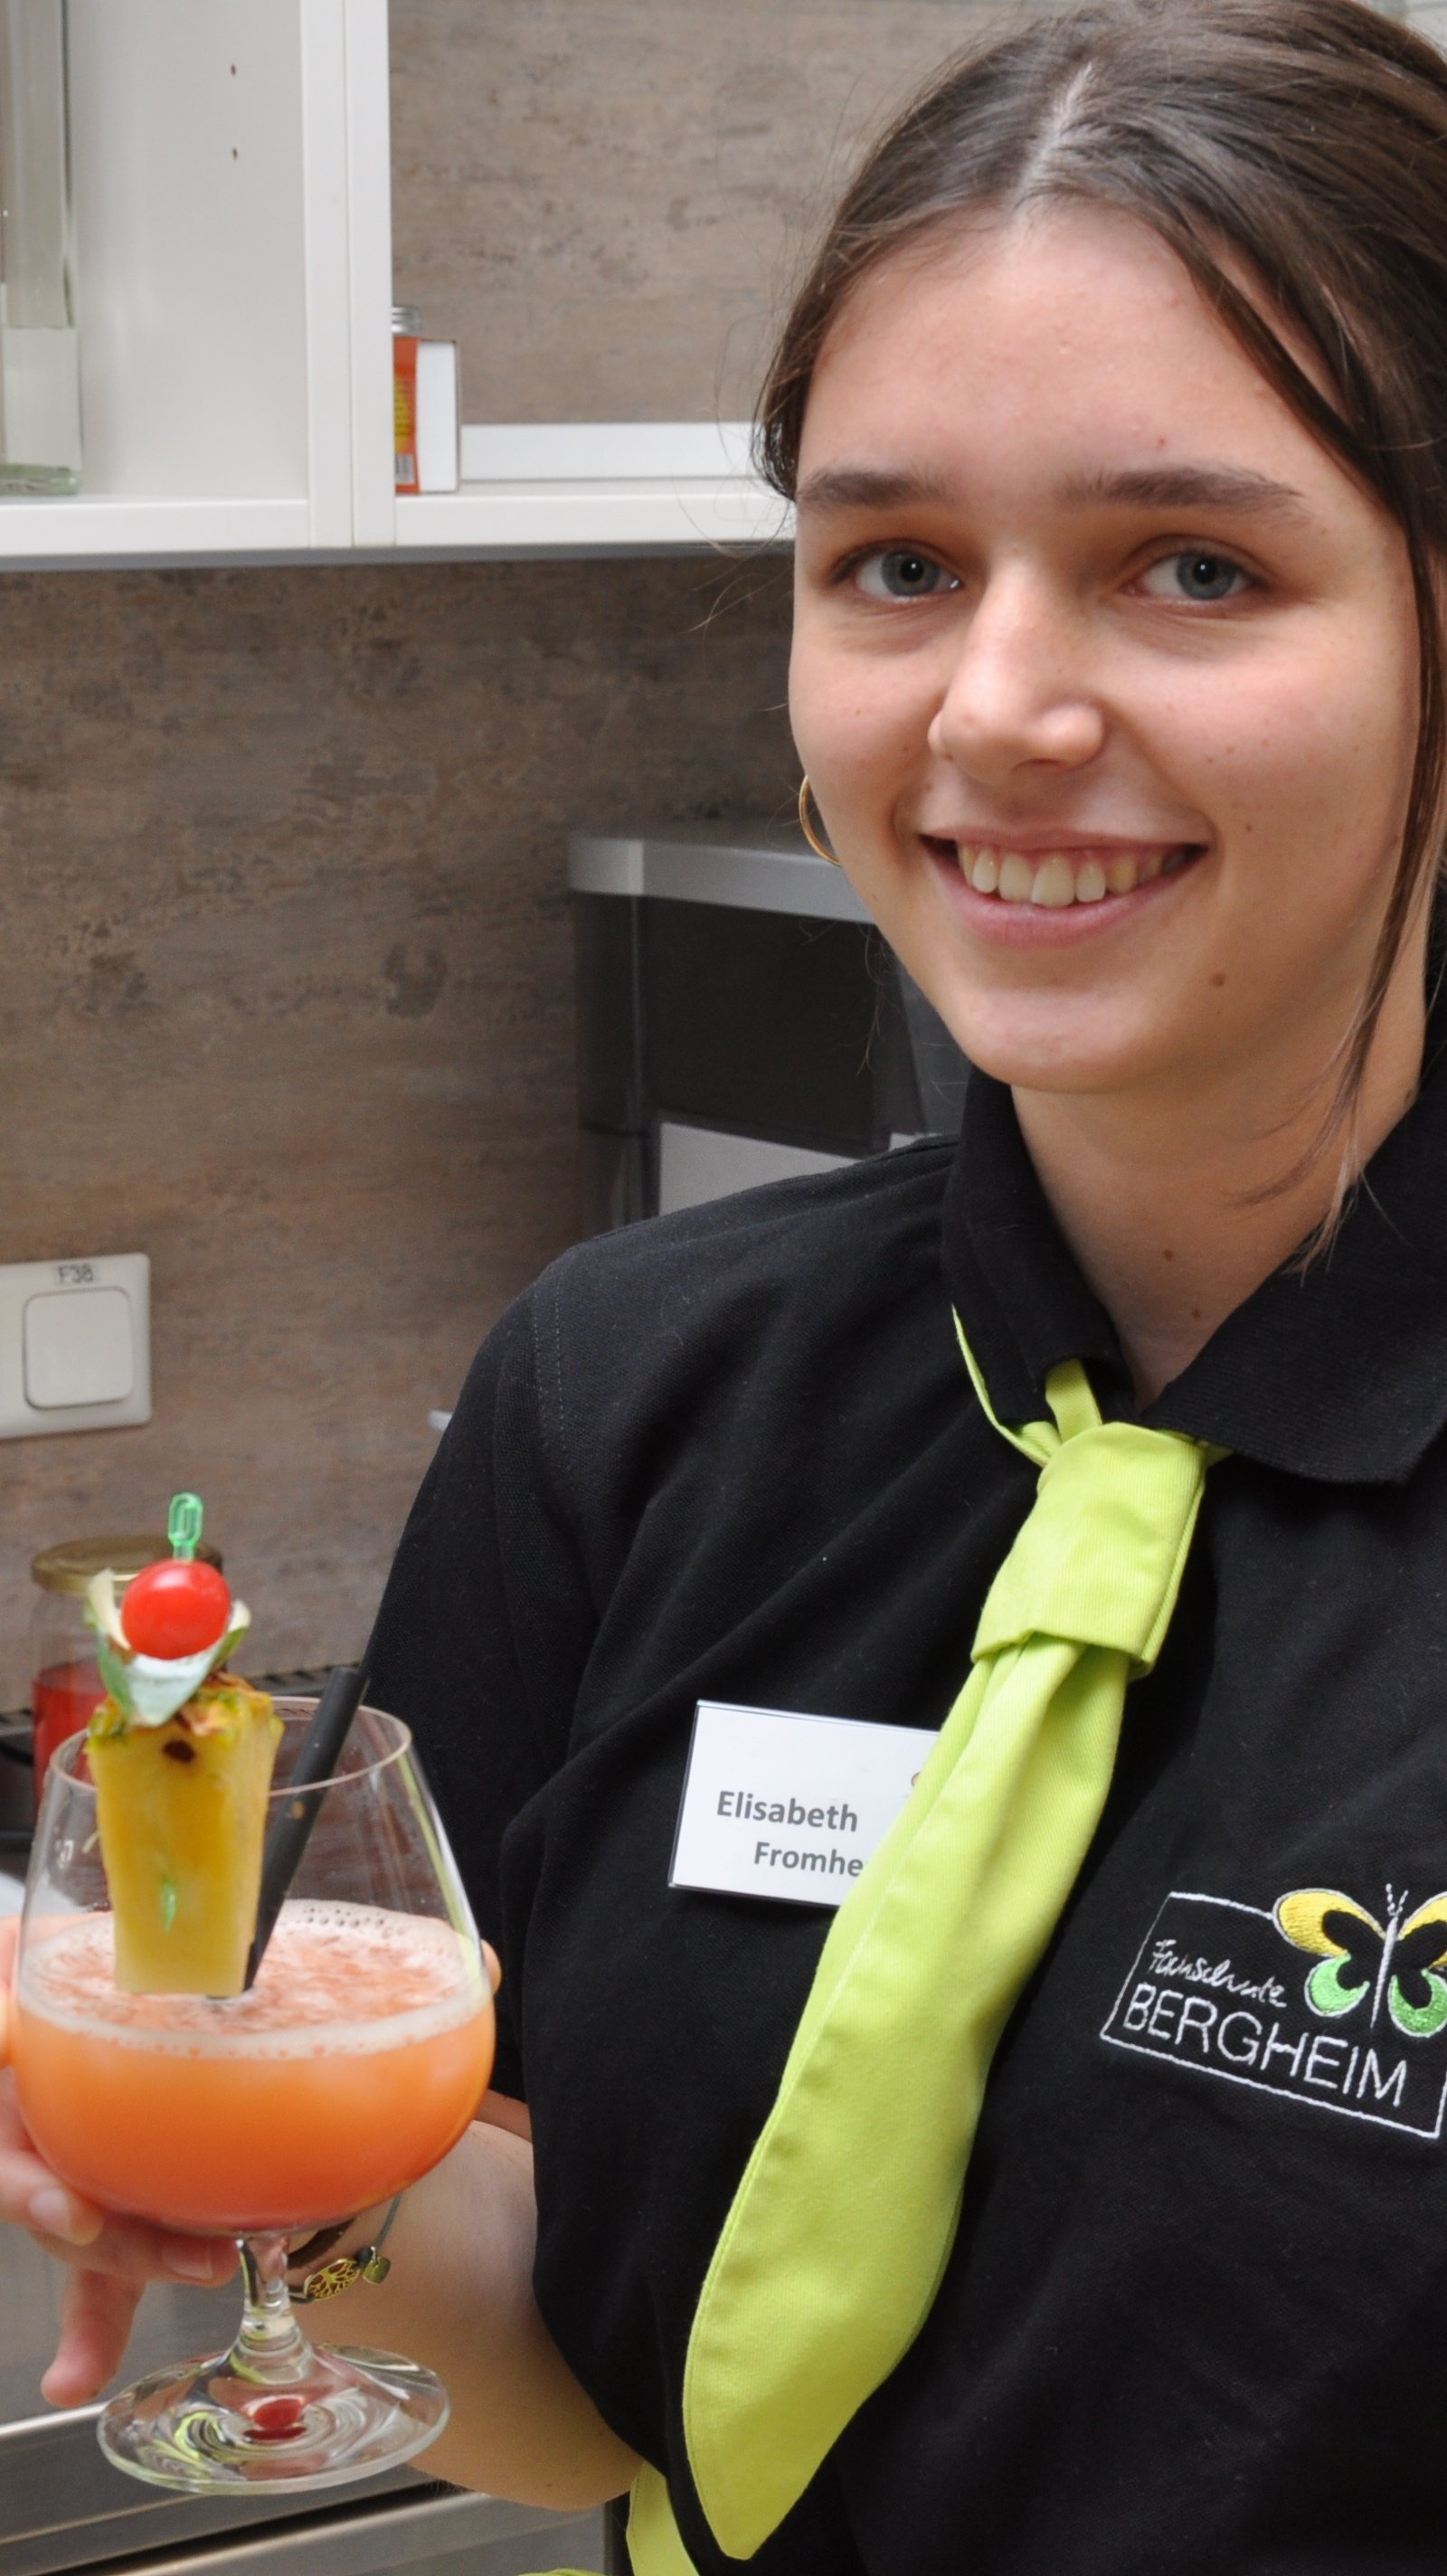 Mädchen in Servicekleidung präsentiert lächeln den fertigen Cocktail